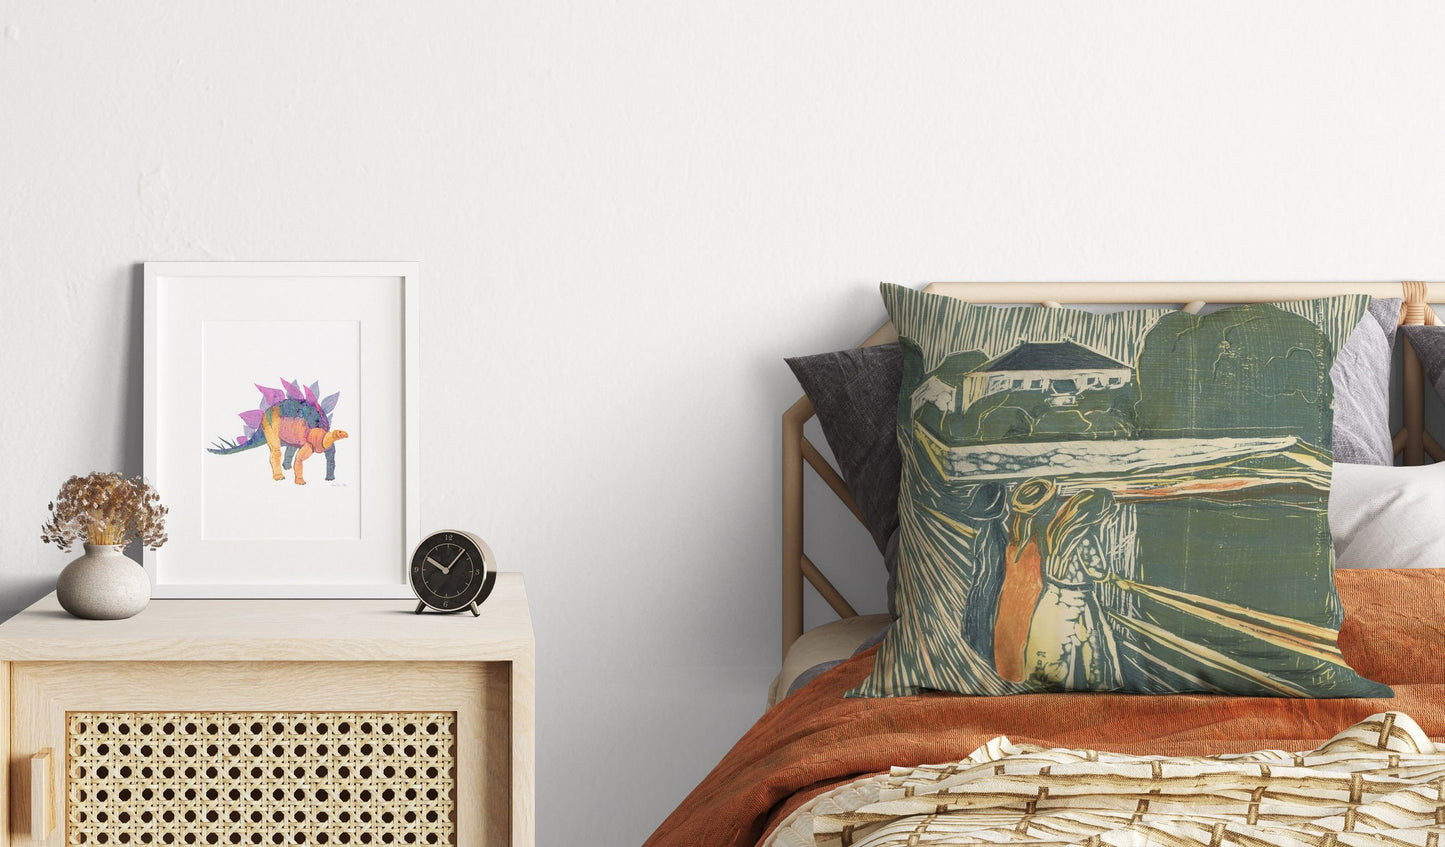 Edvard Munch Famous Art Pikene Pa Broen, Decorative Pillow, Abstract Throw Pillow Cover, Artist Pillow, Green Pillow Cases, Expressionist